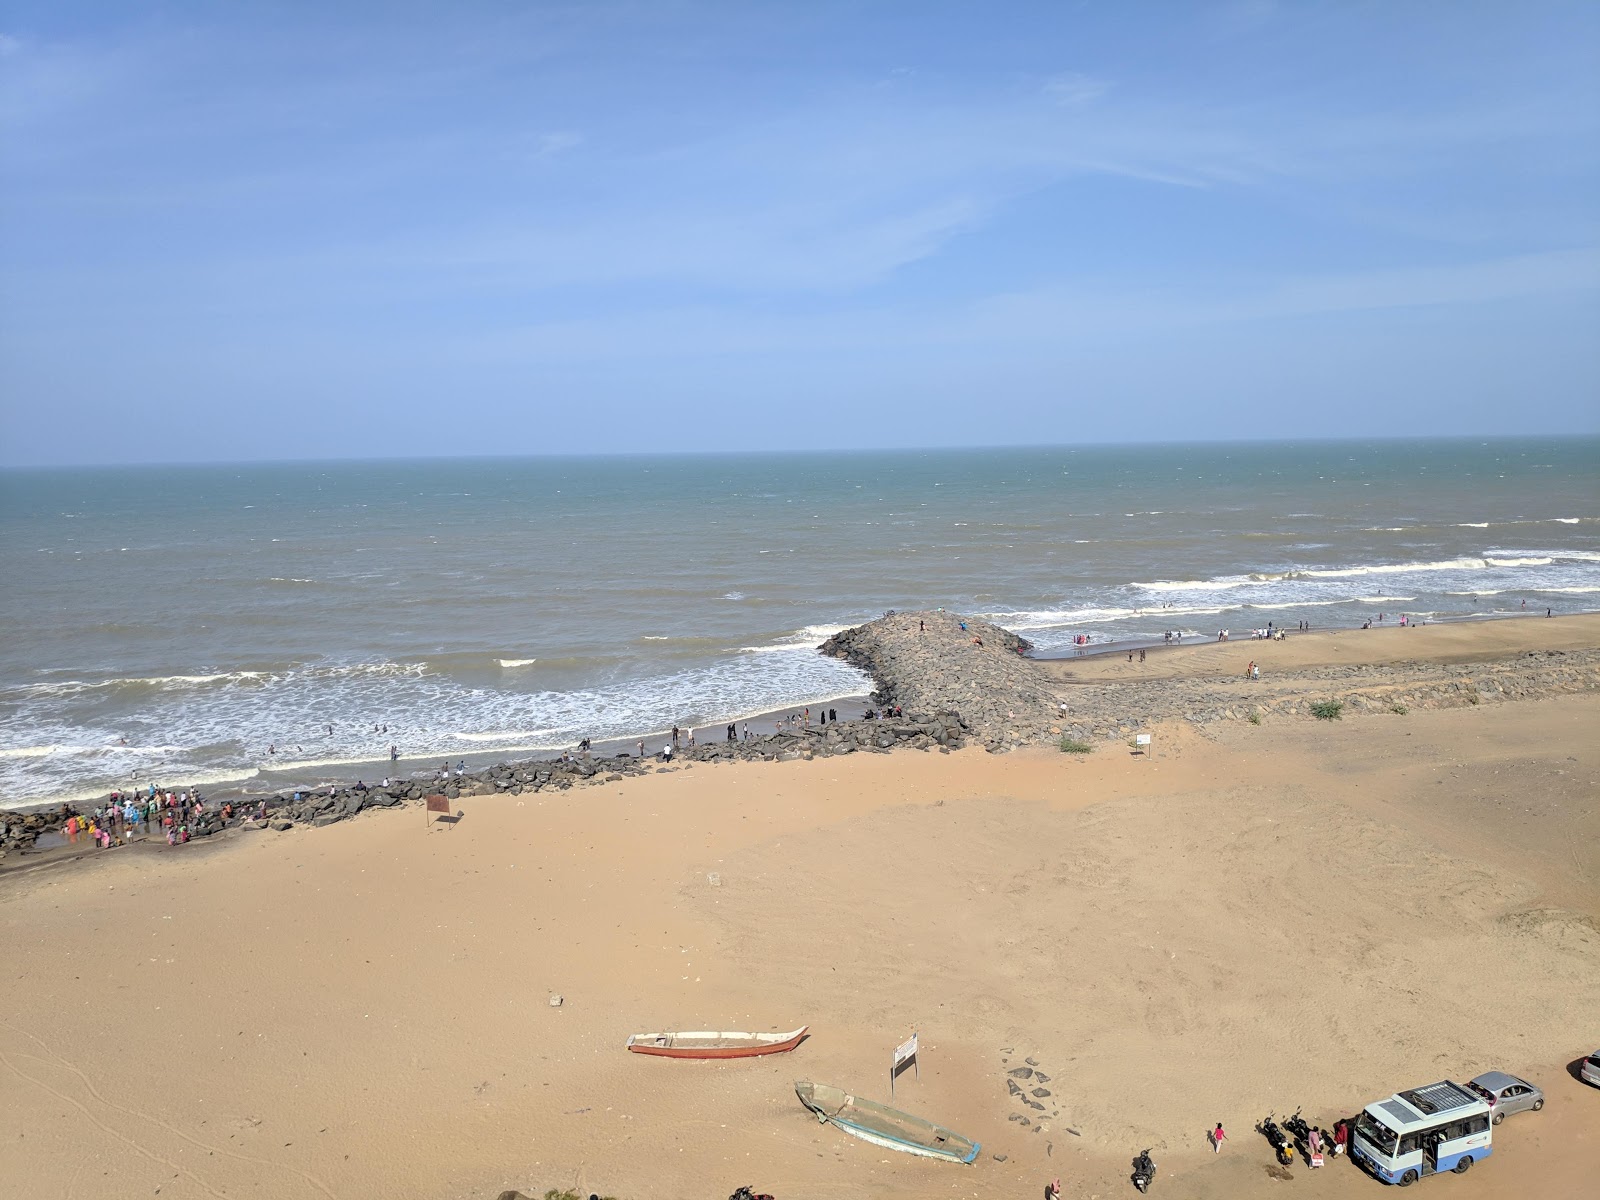 Photo de Poompuhar Beach - endroit populaire parmi les connaisseurs de la détente